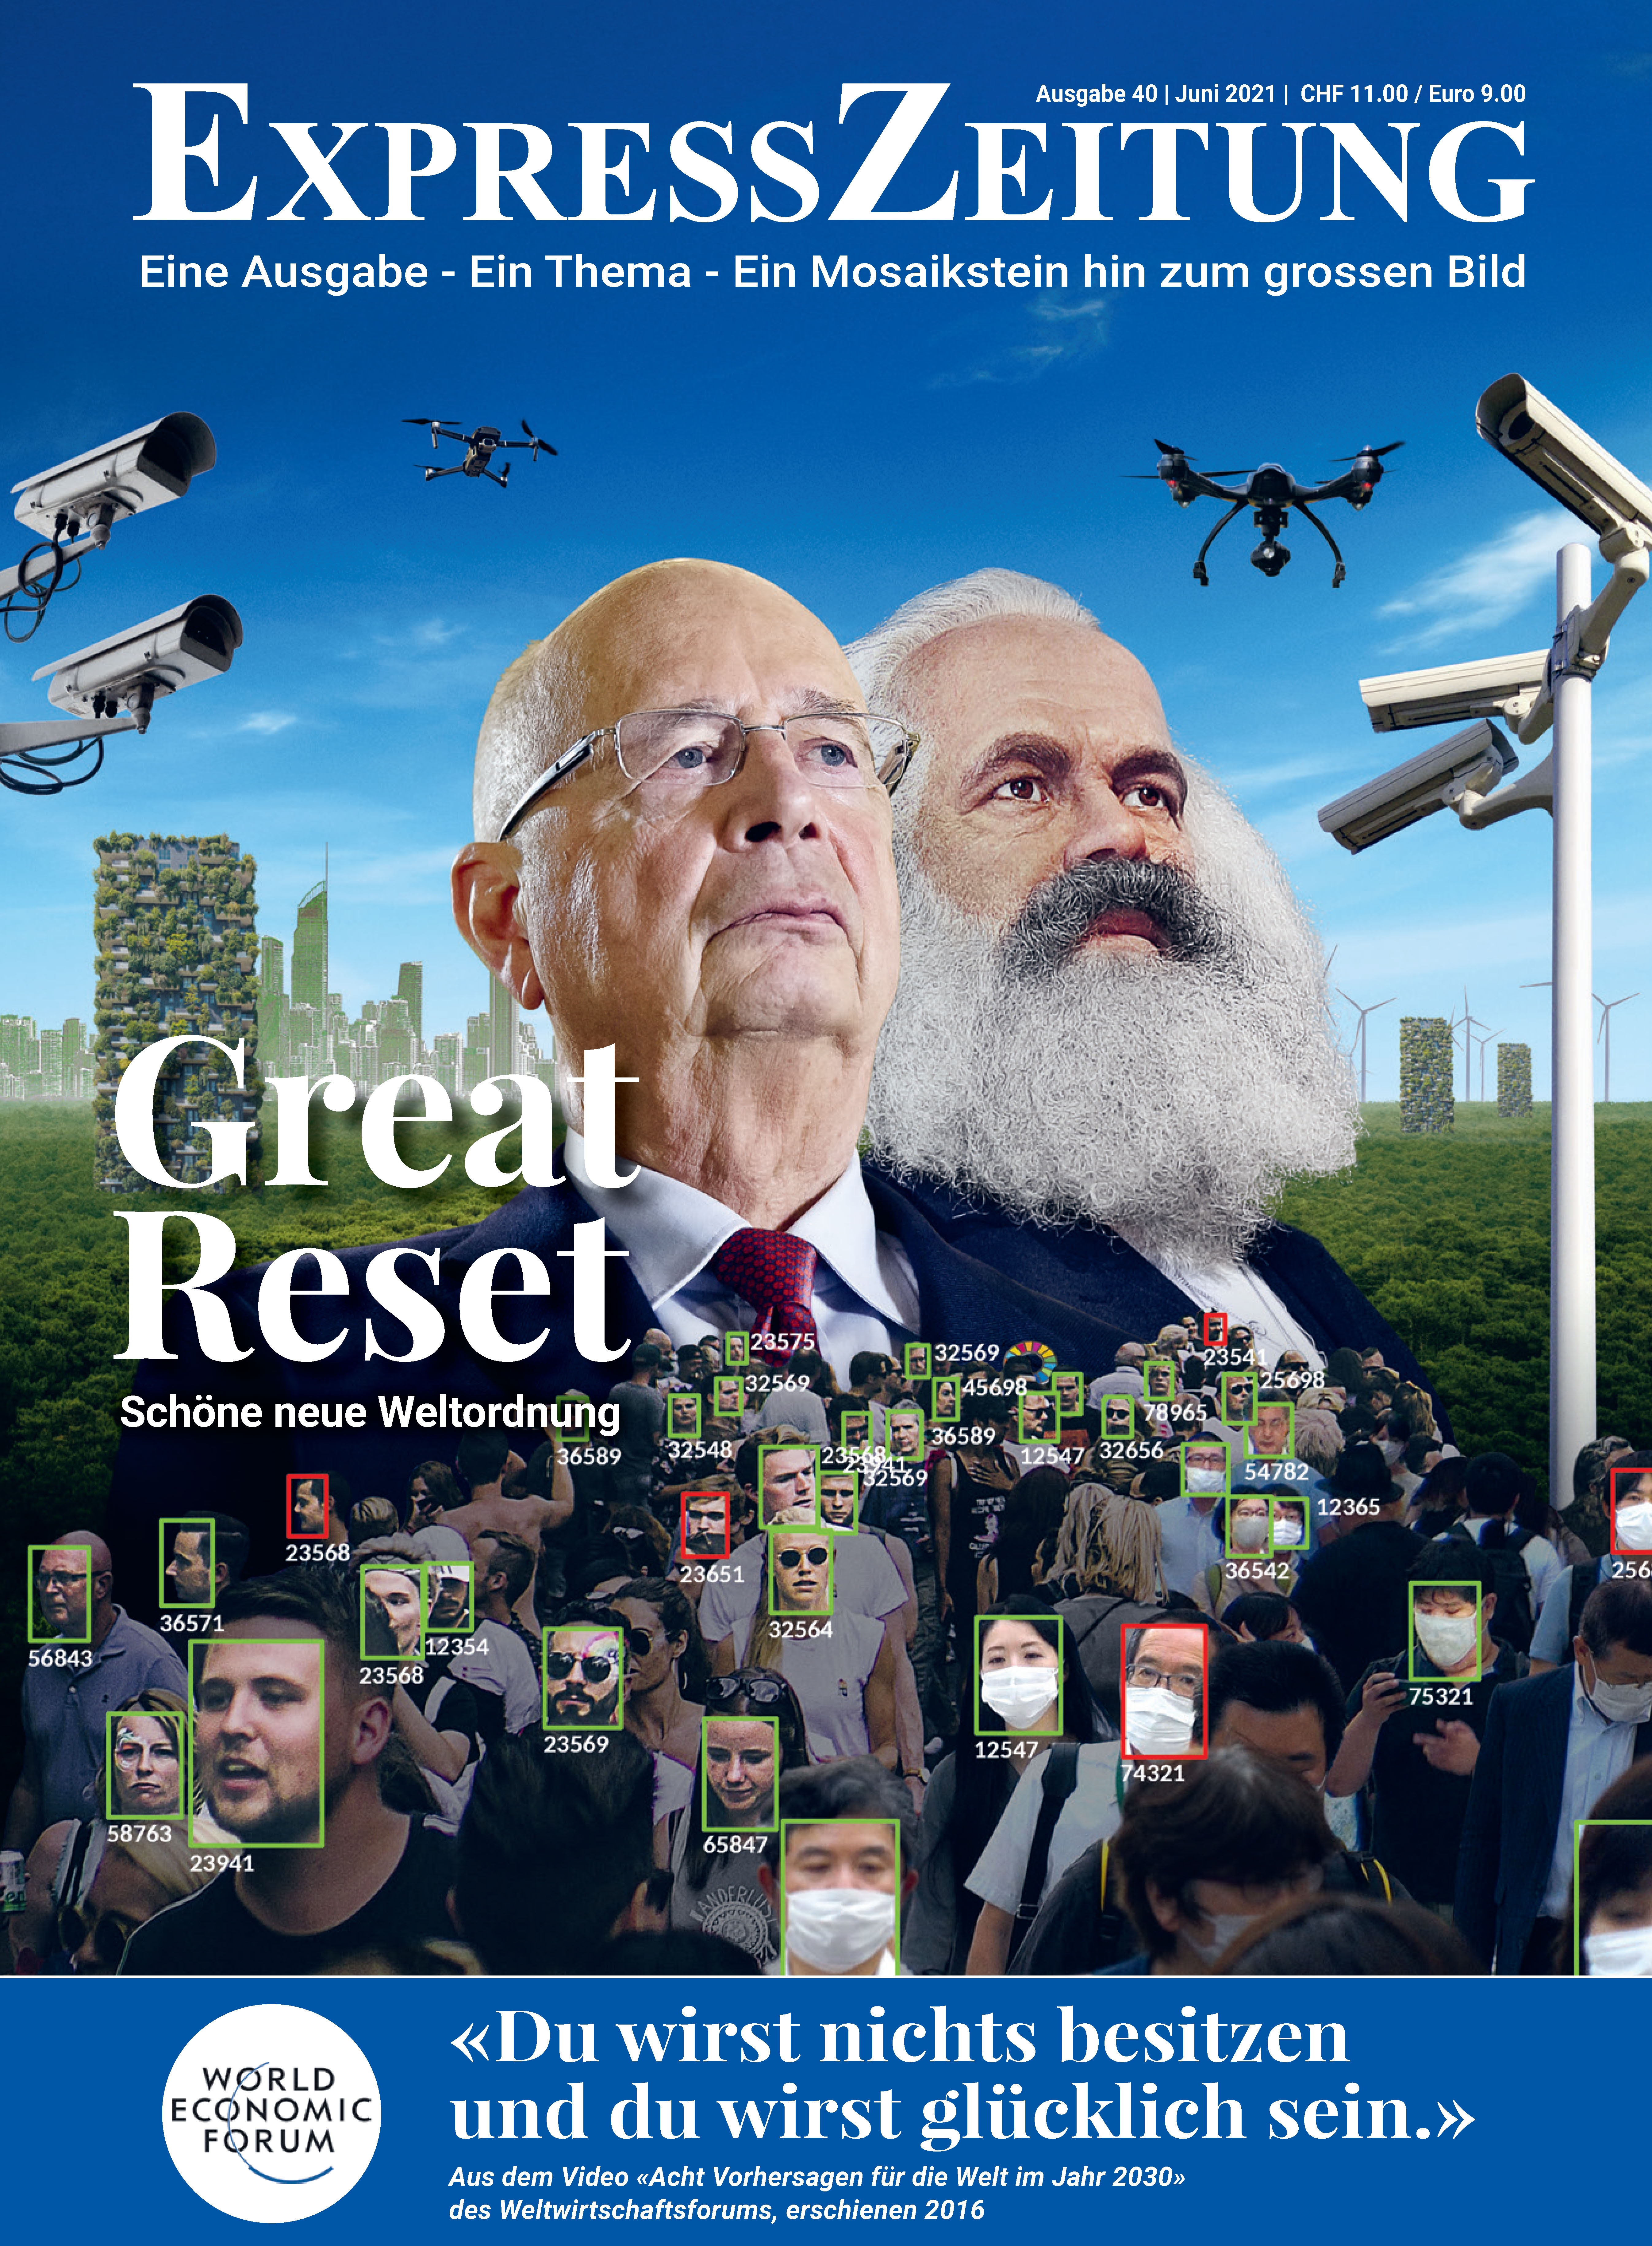 Ausgabe 40: Great Reset – Schöne neue Weltordnung